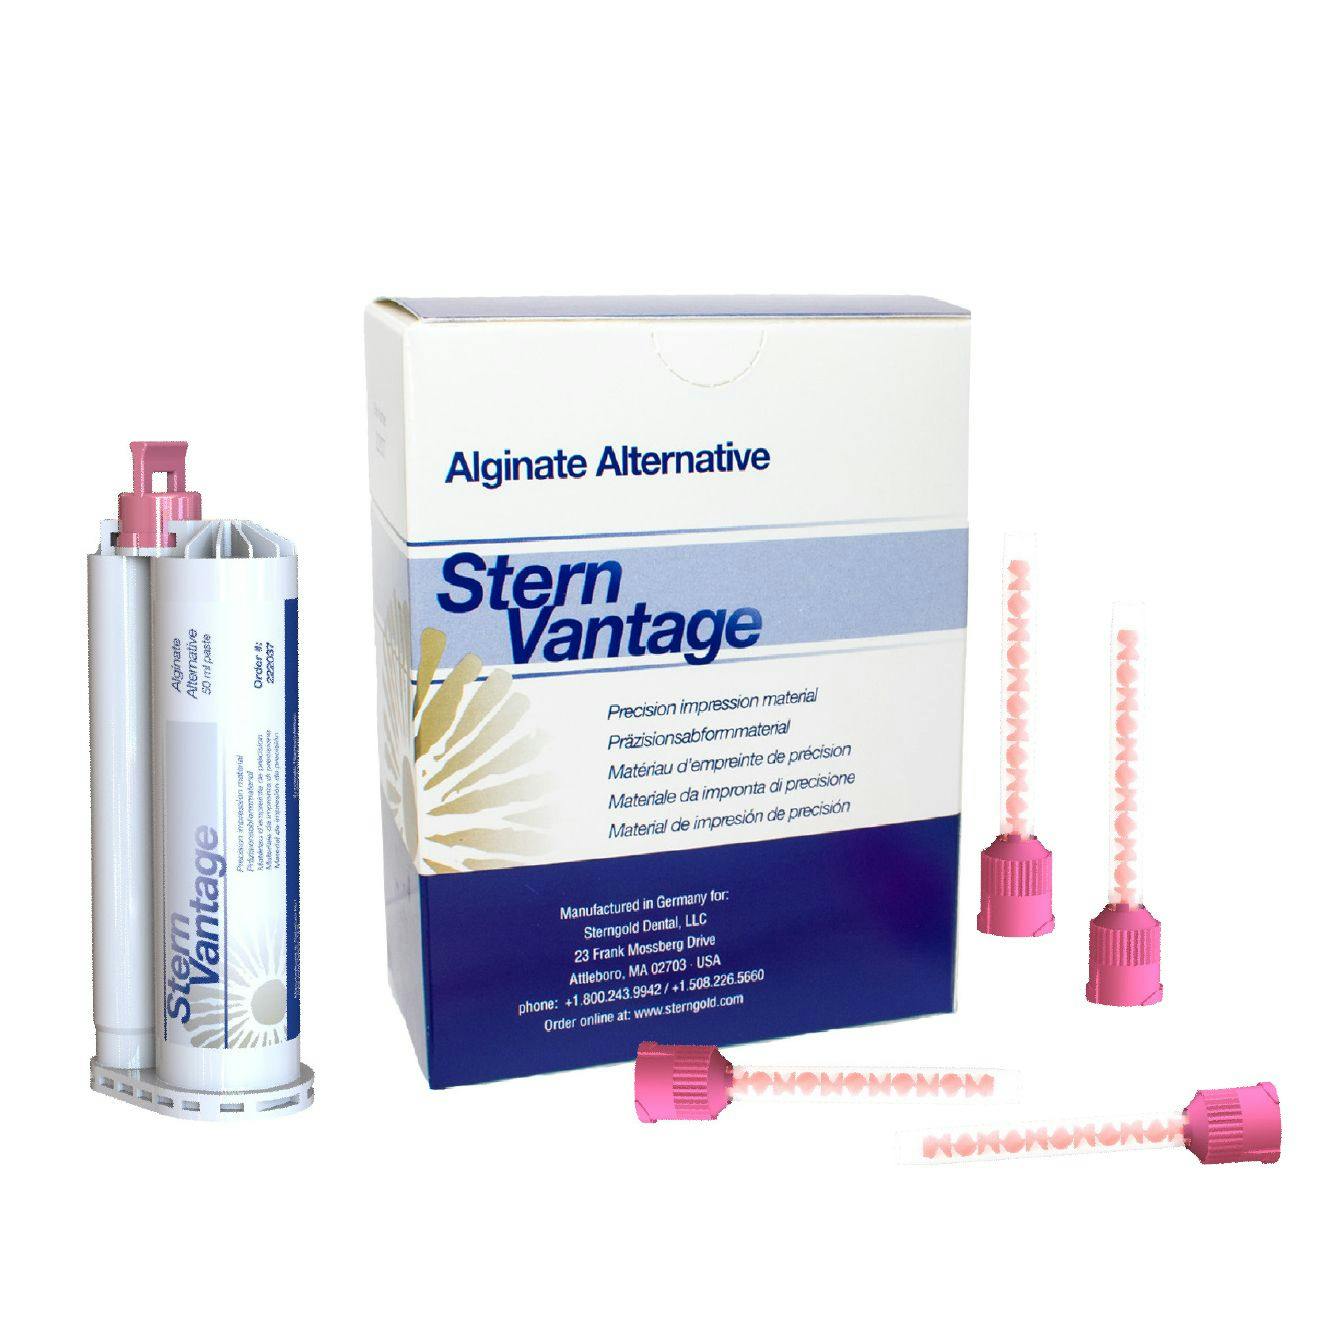 SternVantage Alginate Alternative